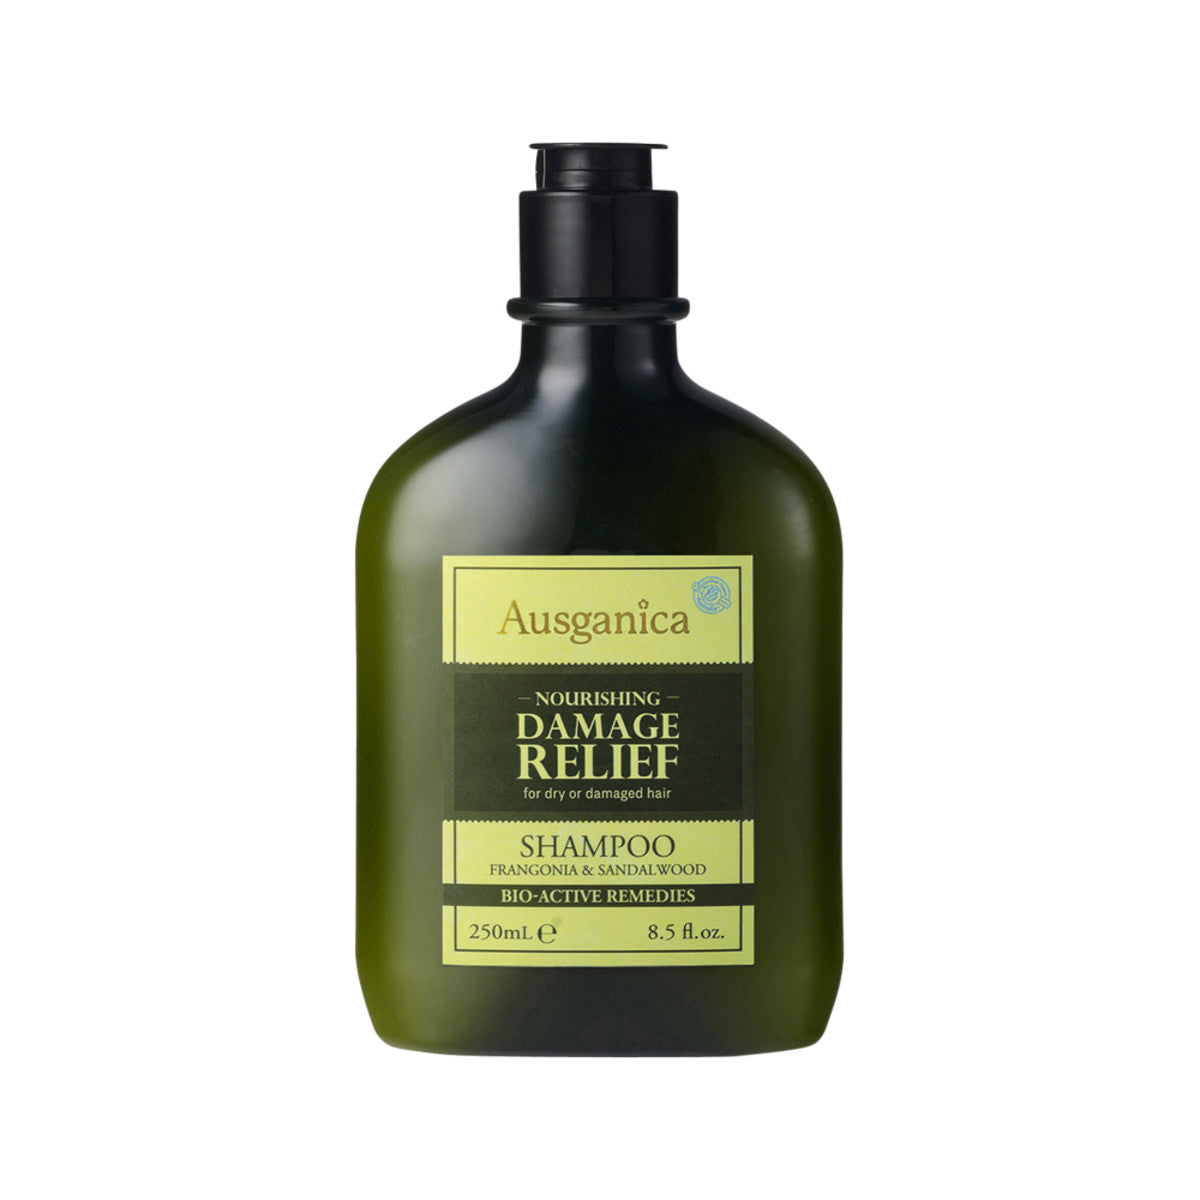 Ausganica - Damage Relief Shampoo